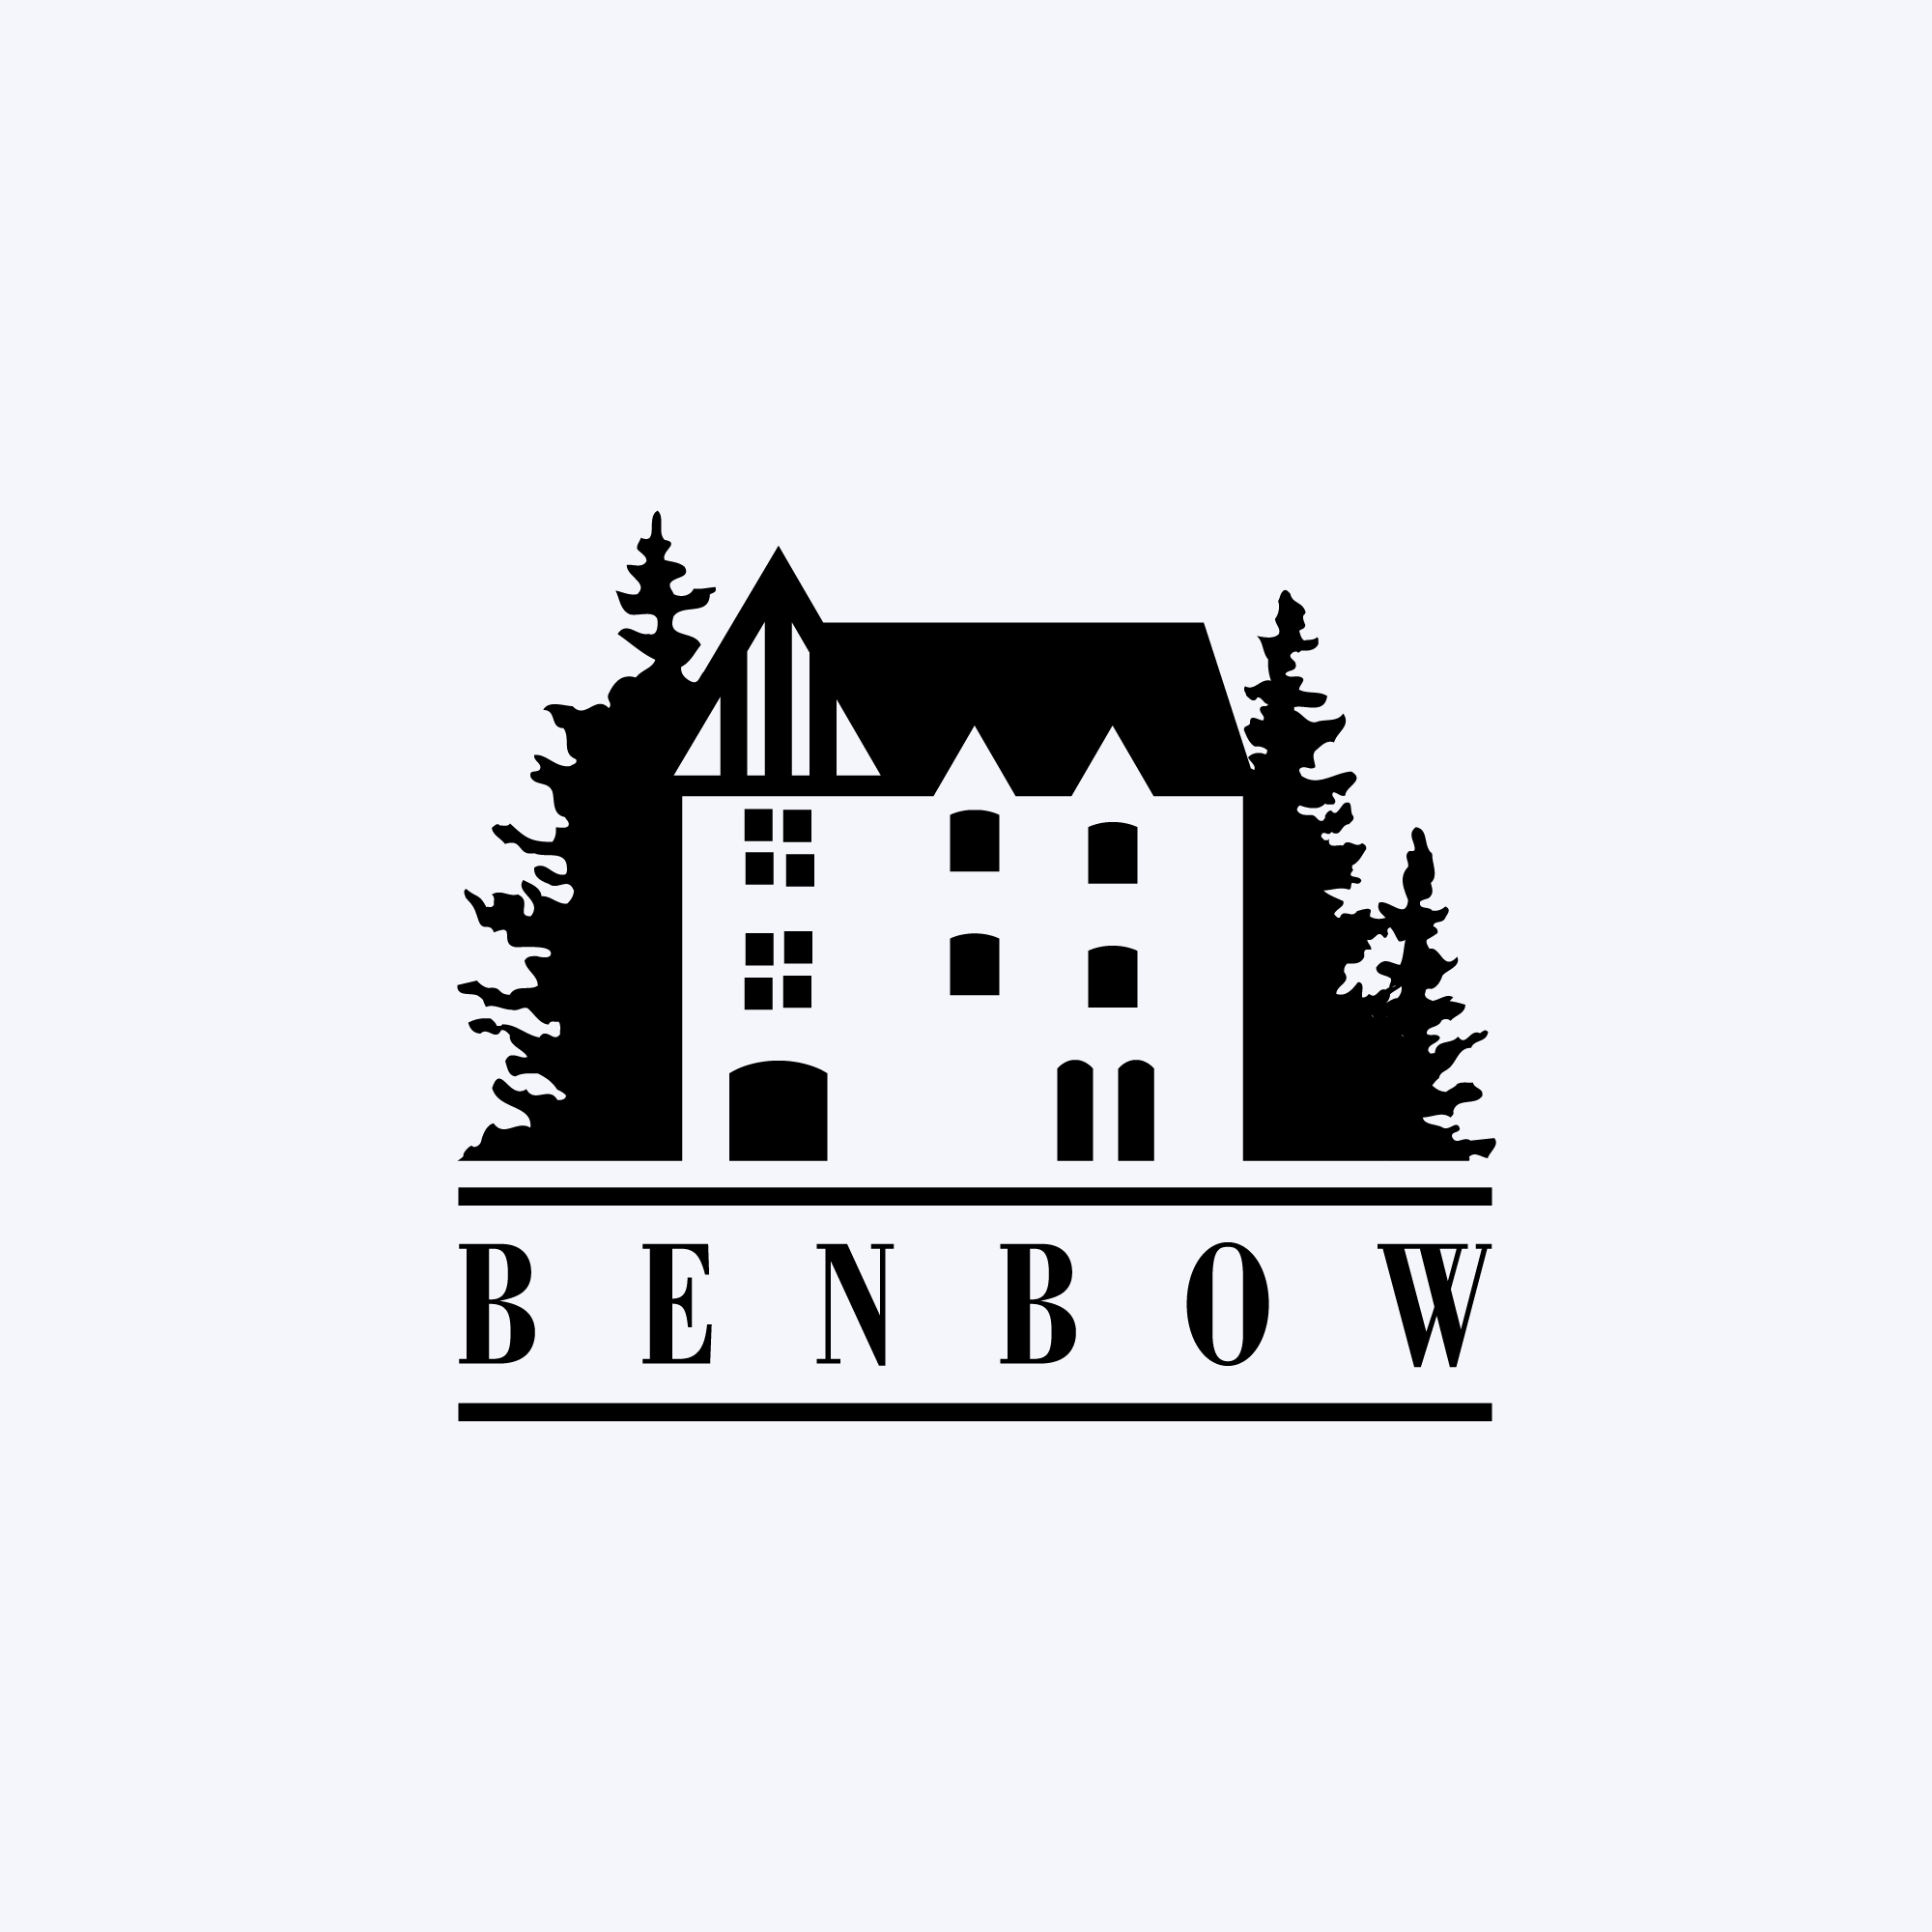 BenbowRev-logo.png